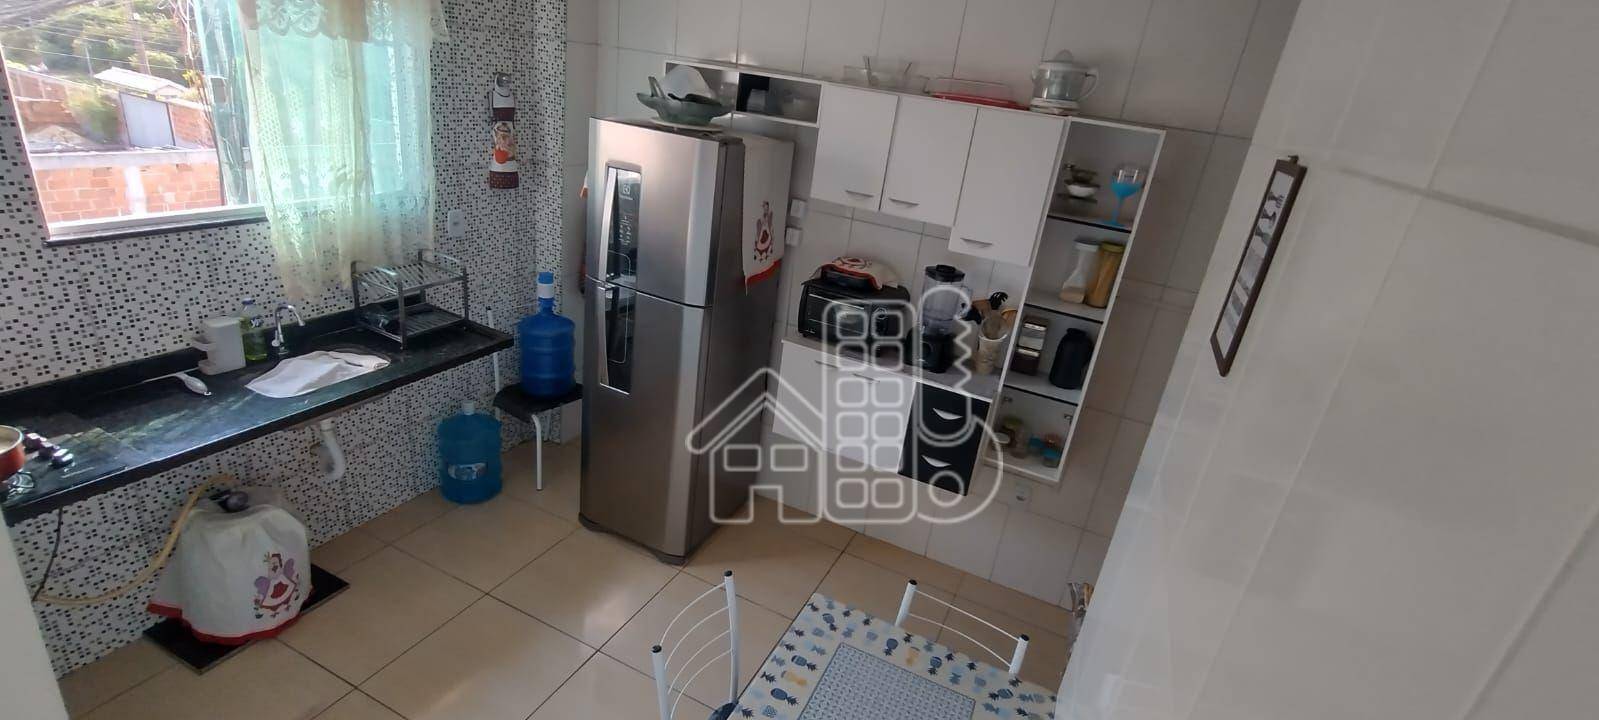 Apartamento com 2 dormitórios à venda, 61 m² por R$ 240.000,99 - Jardim Atlântico Leste (Itaipuaçu) - Maricá/RJ